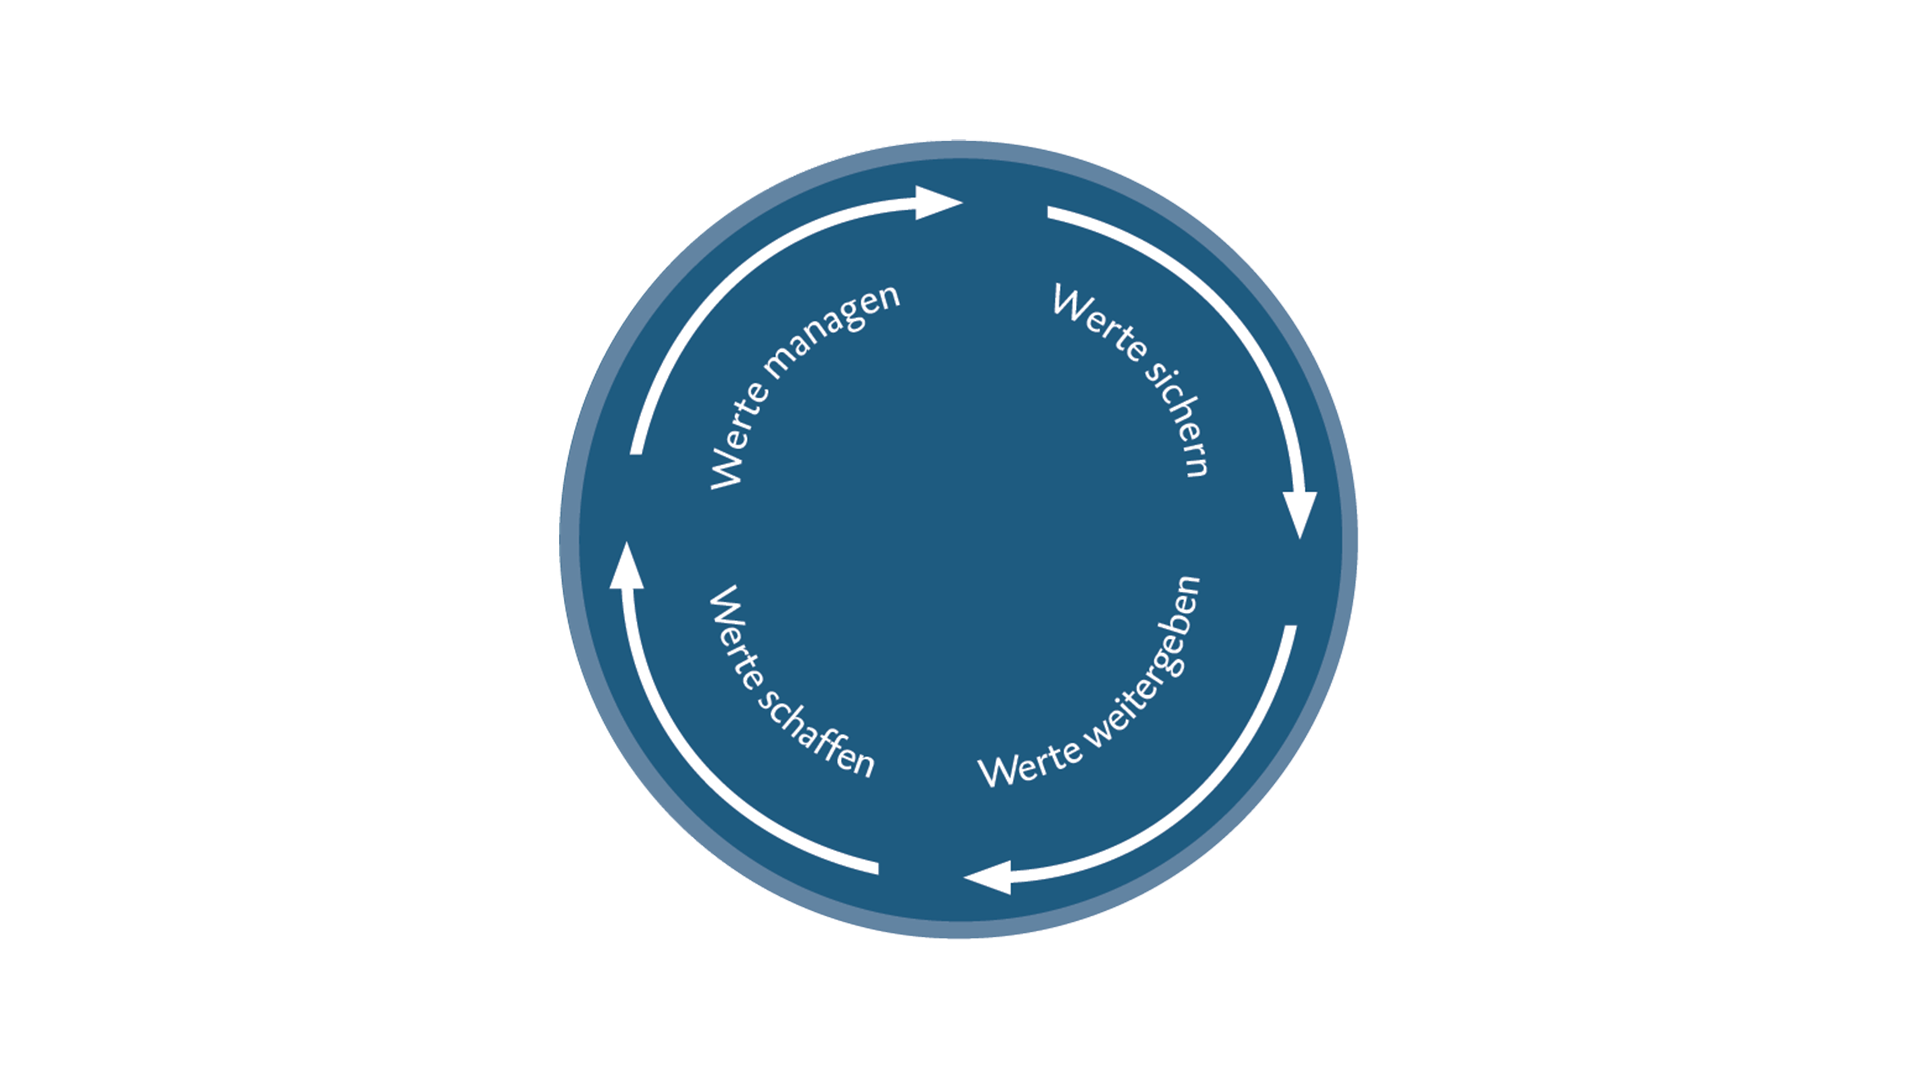 Kreisförmige Darstellung vom Werte-Kreislauf der BTV Vier Länder Bank: Werte schaffen, Werte managen, Werte sichern, Werte weitergeben